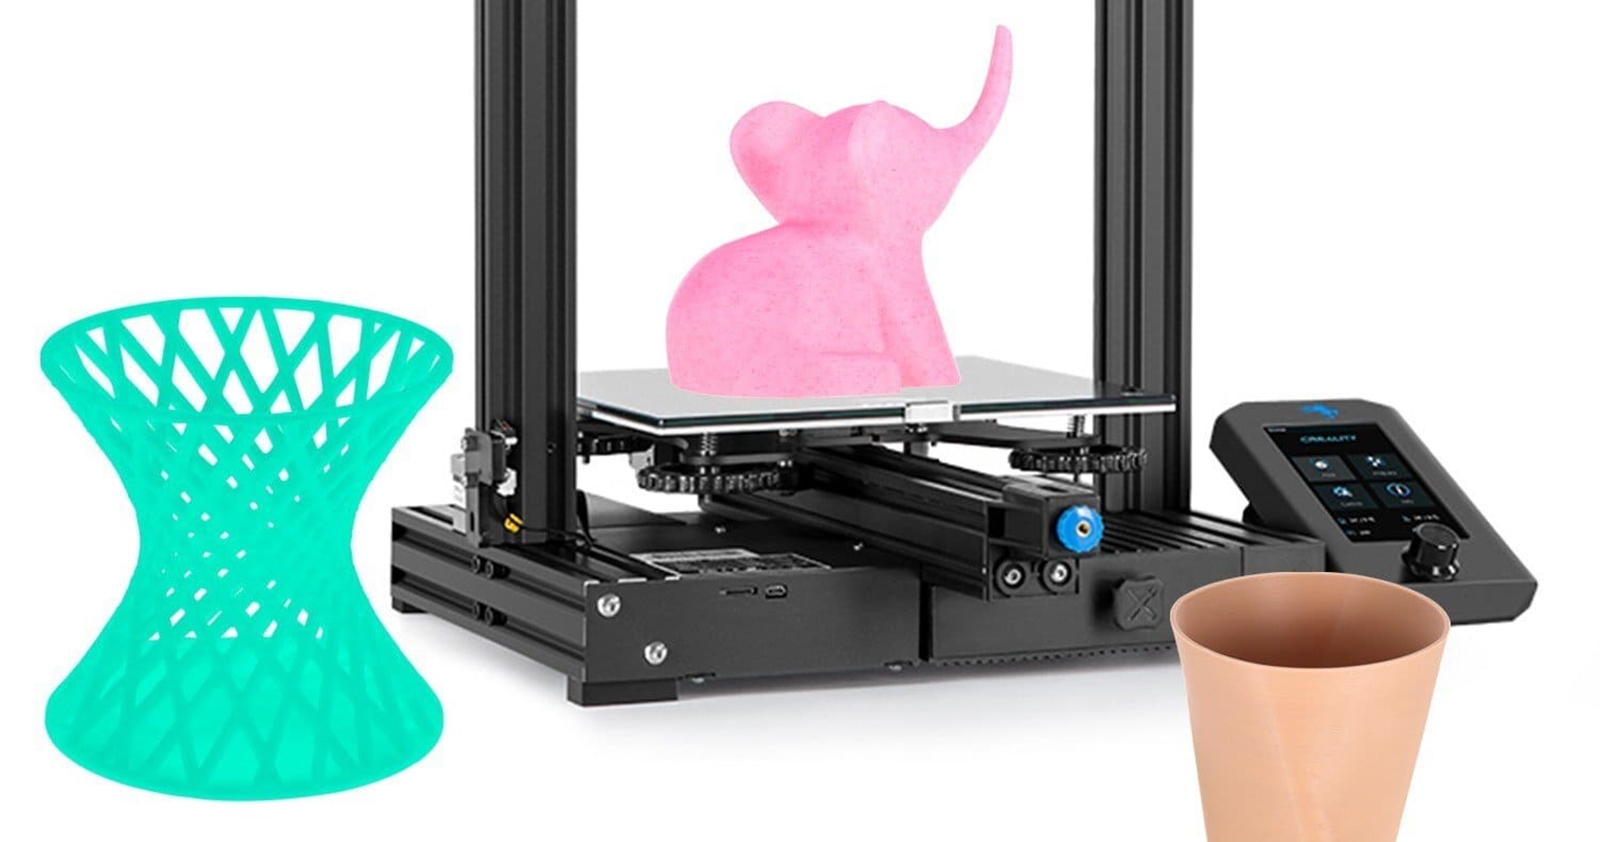 L'imprimante 3D ENDER 3 V2 de Creality: Le RETOUR de la REINE